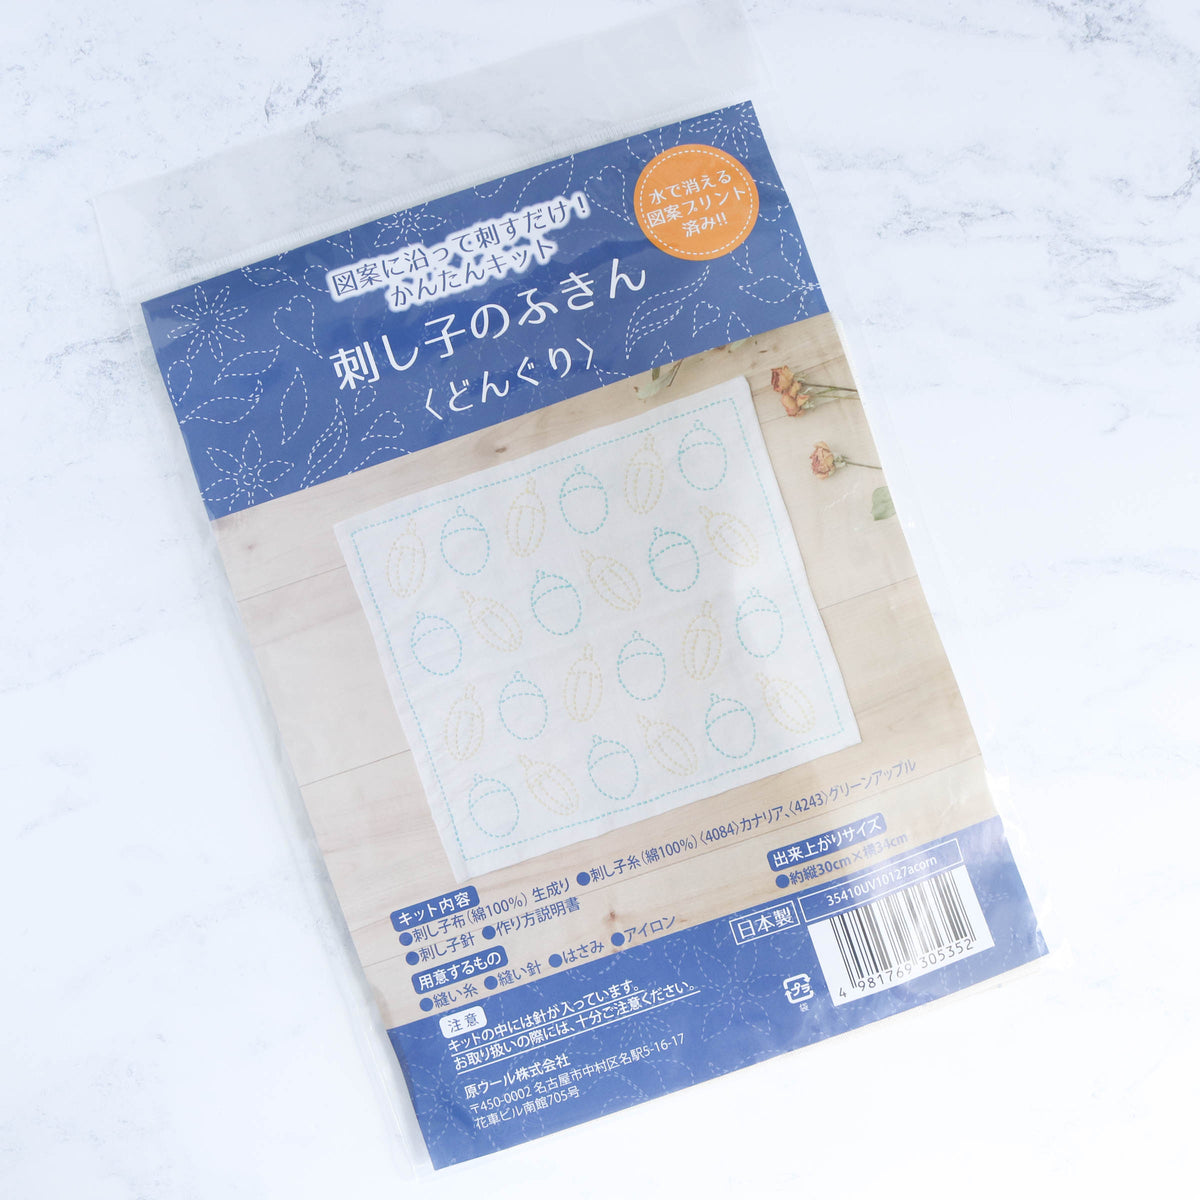 Japanese Sashiko Sampler Kit - Acorns